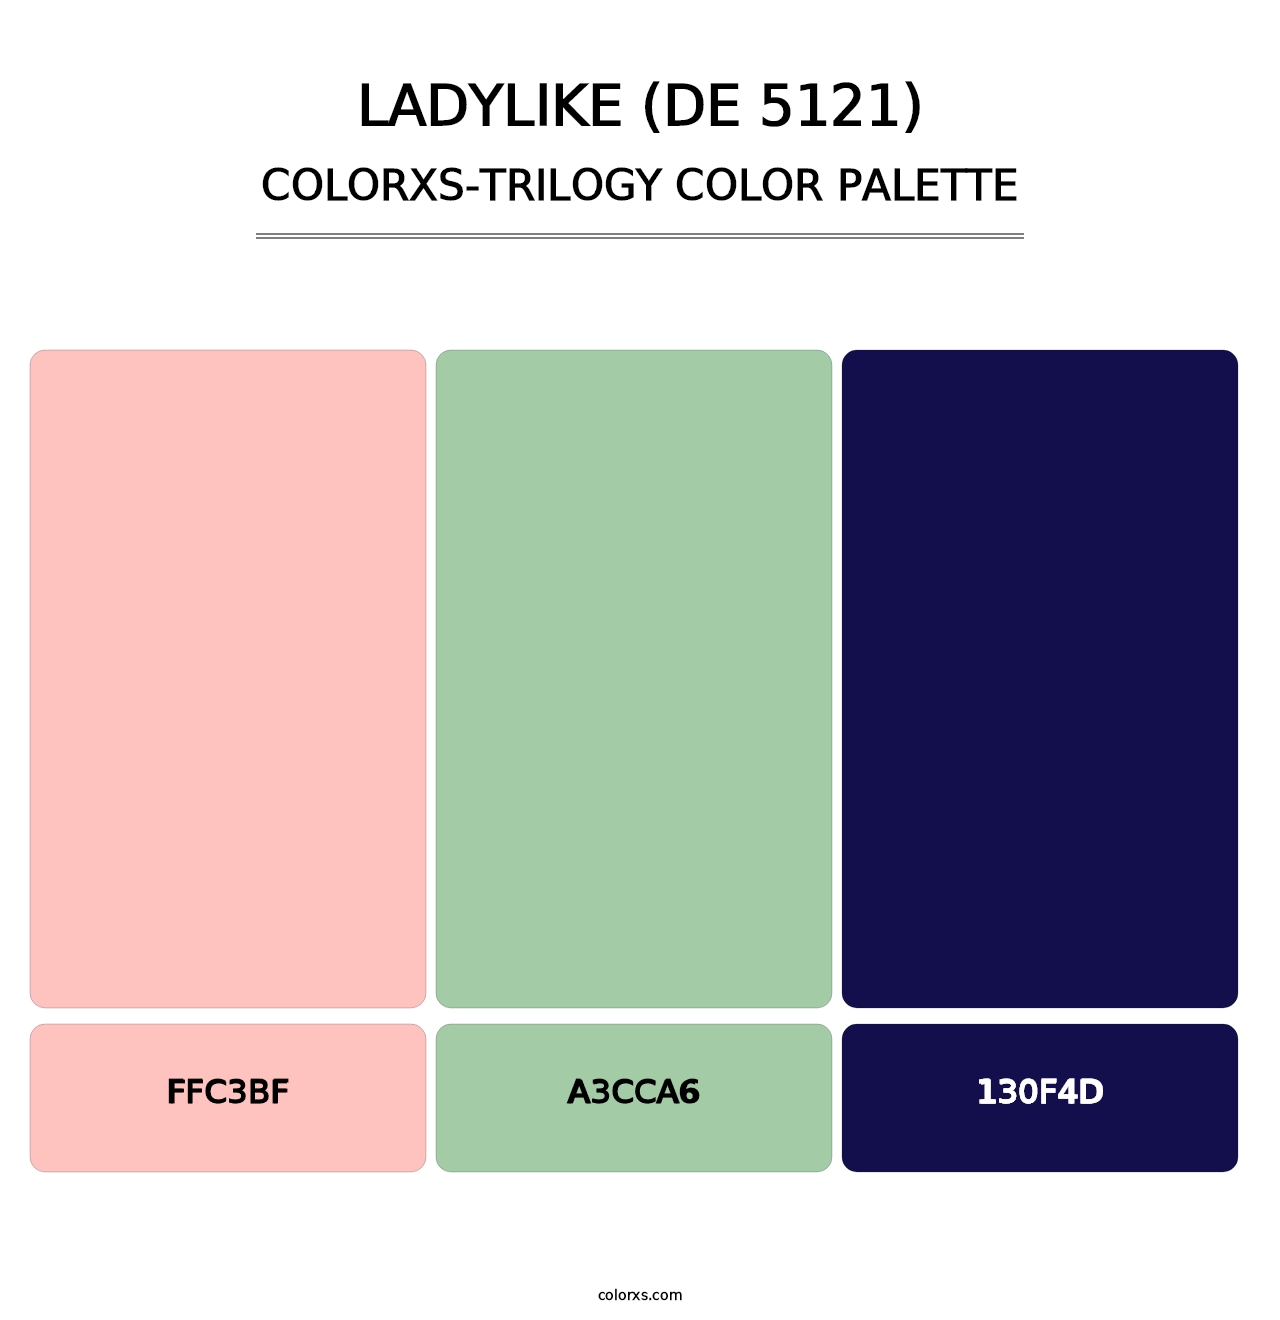 Ladylike (DE 5121) - Colorxs Trilogy Palette